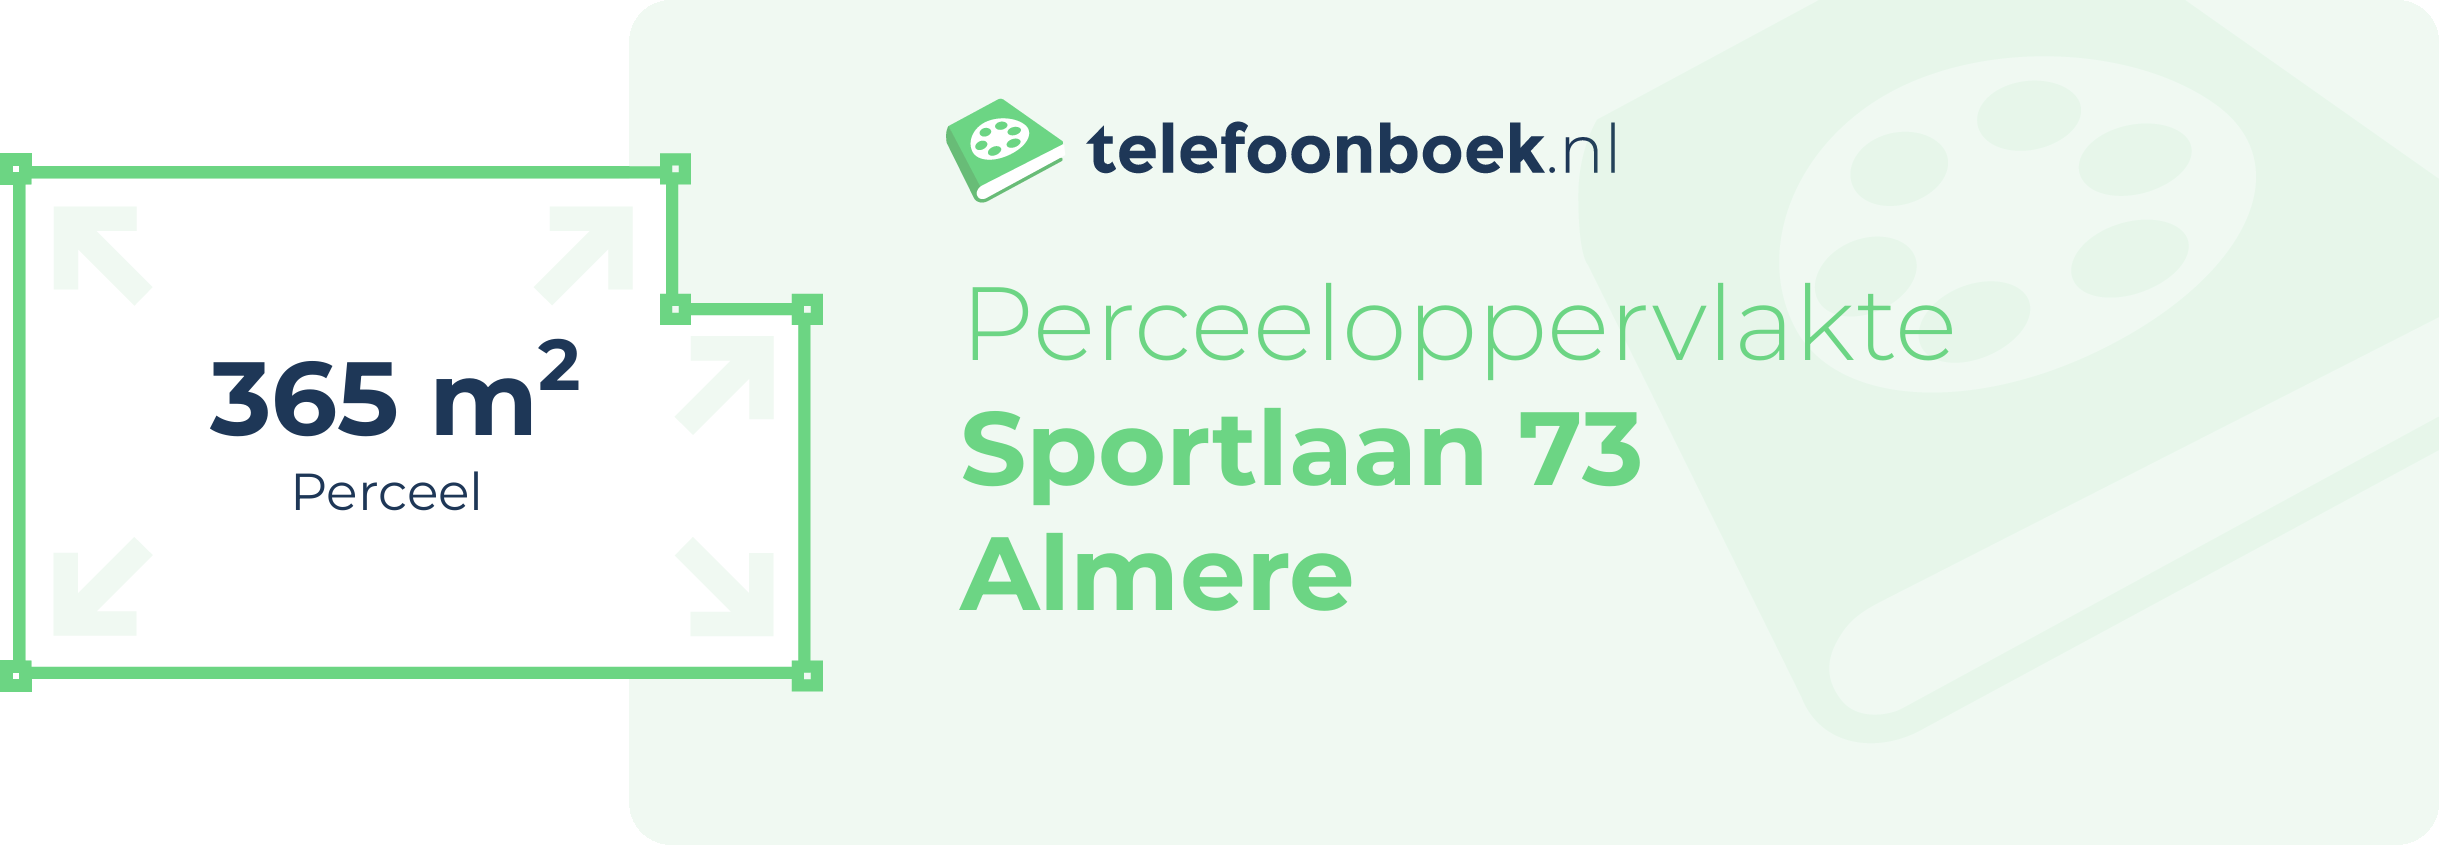 Perceeloppervlakte Sportlaan 73 Almere